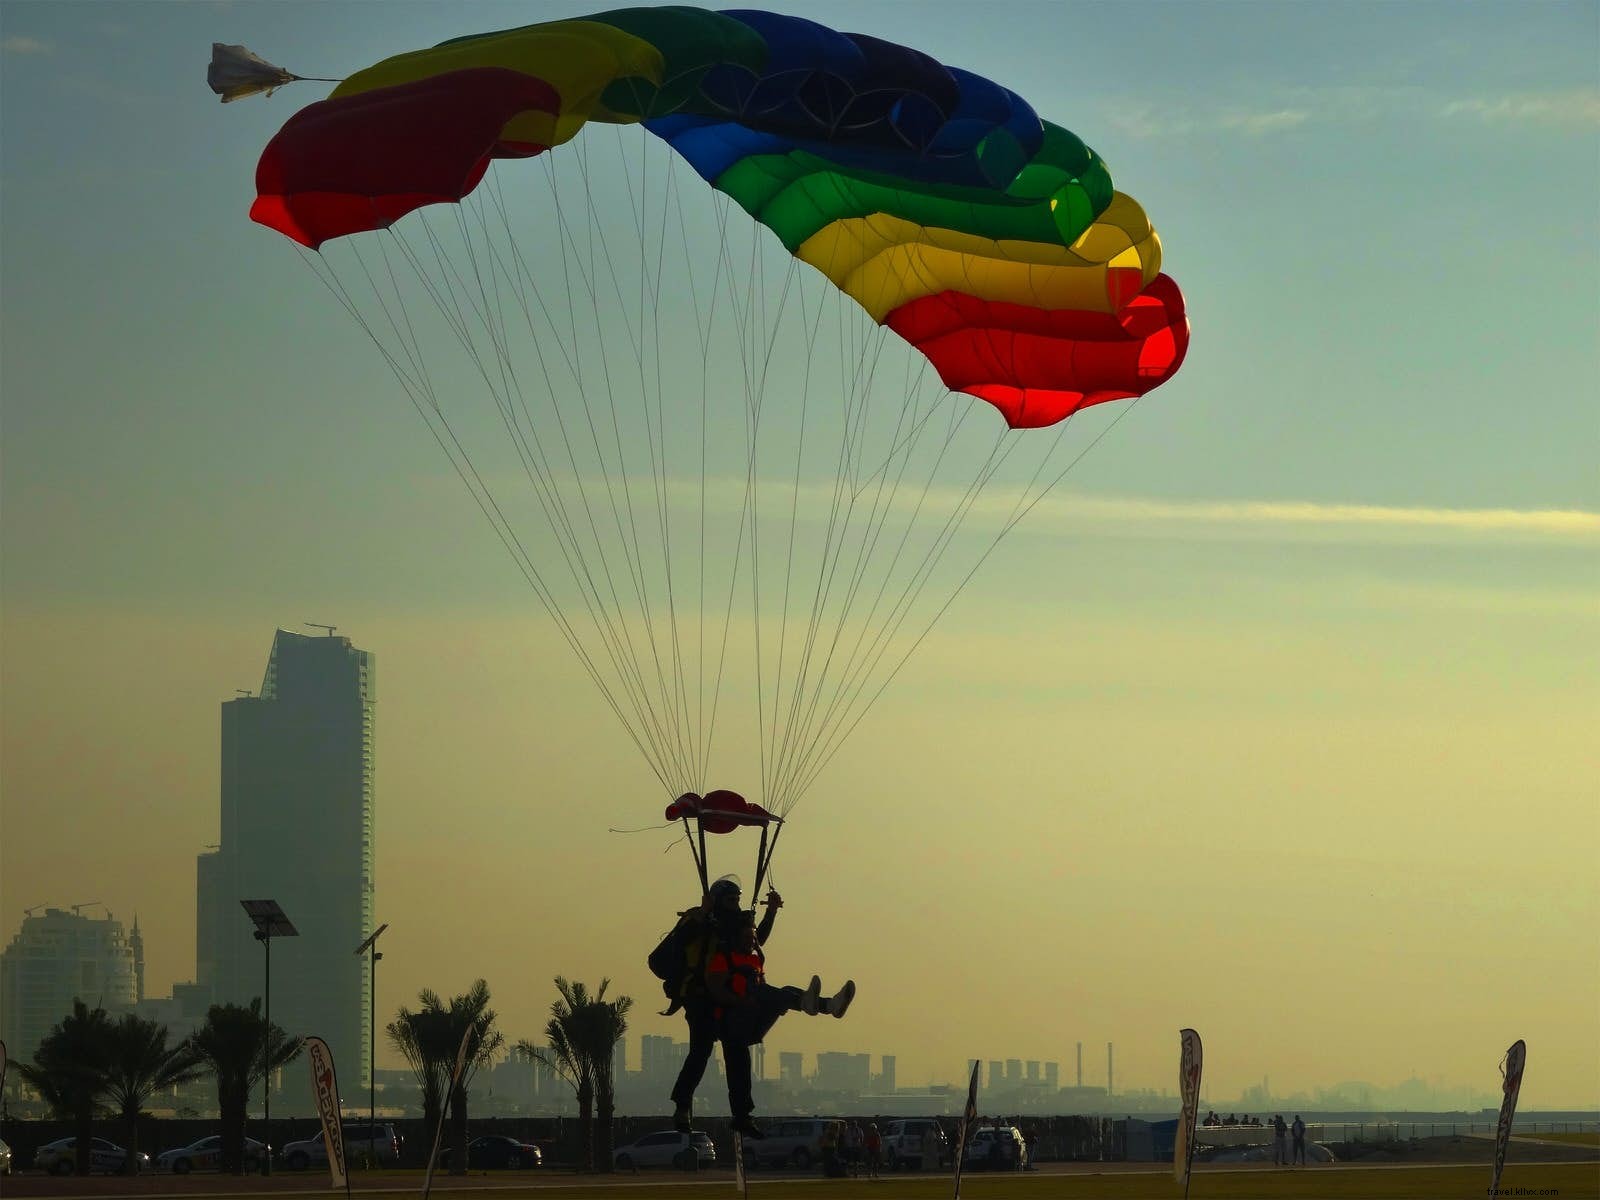 Daredevil Dubai:los mejores deportes de aventura del emirato 